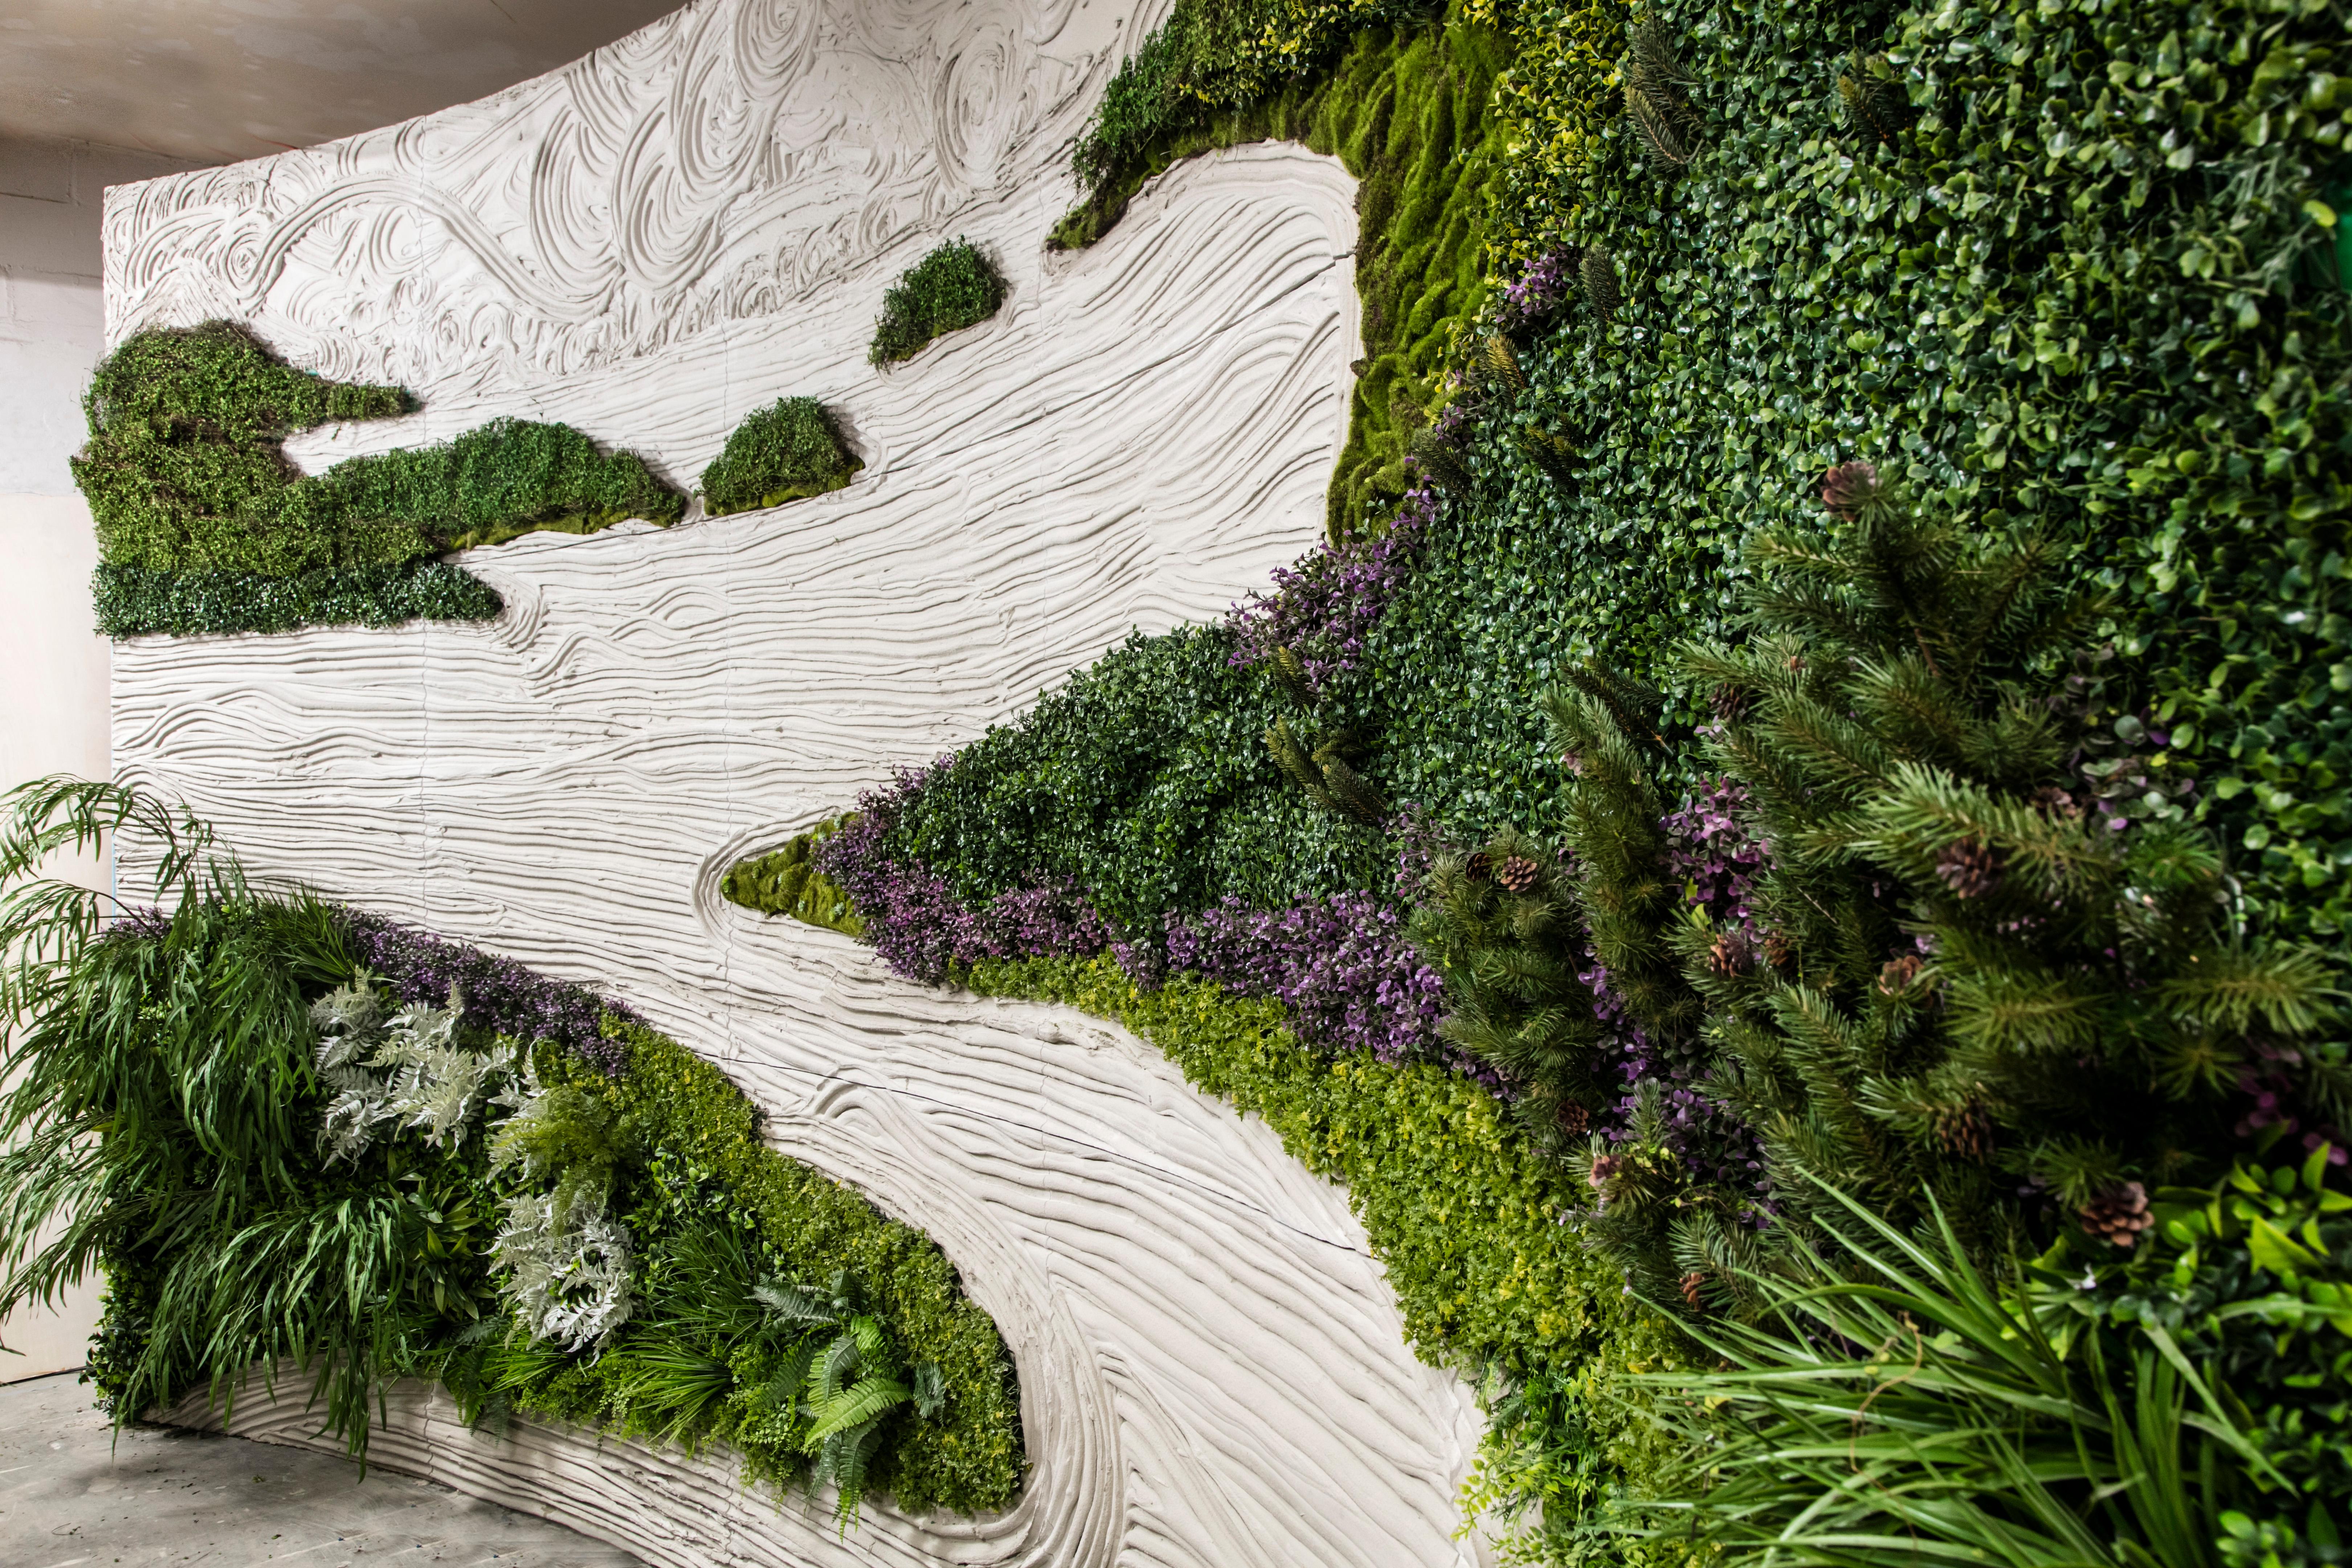 Ce mur vert s'inspire de la logique de conception du monde naturel et des jardins zen traditionnels japonais. Chaque mur personnalisé est disponible avec des plantes en soie vivantes ou artificielles. Les murs vivants sont réalisés avec des systèmes